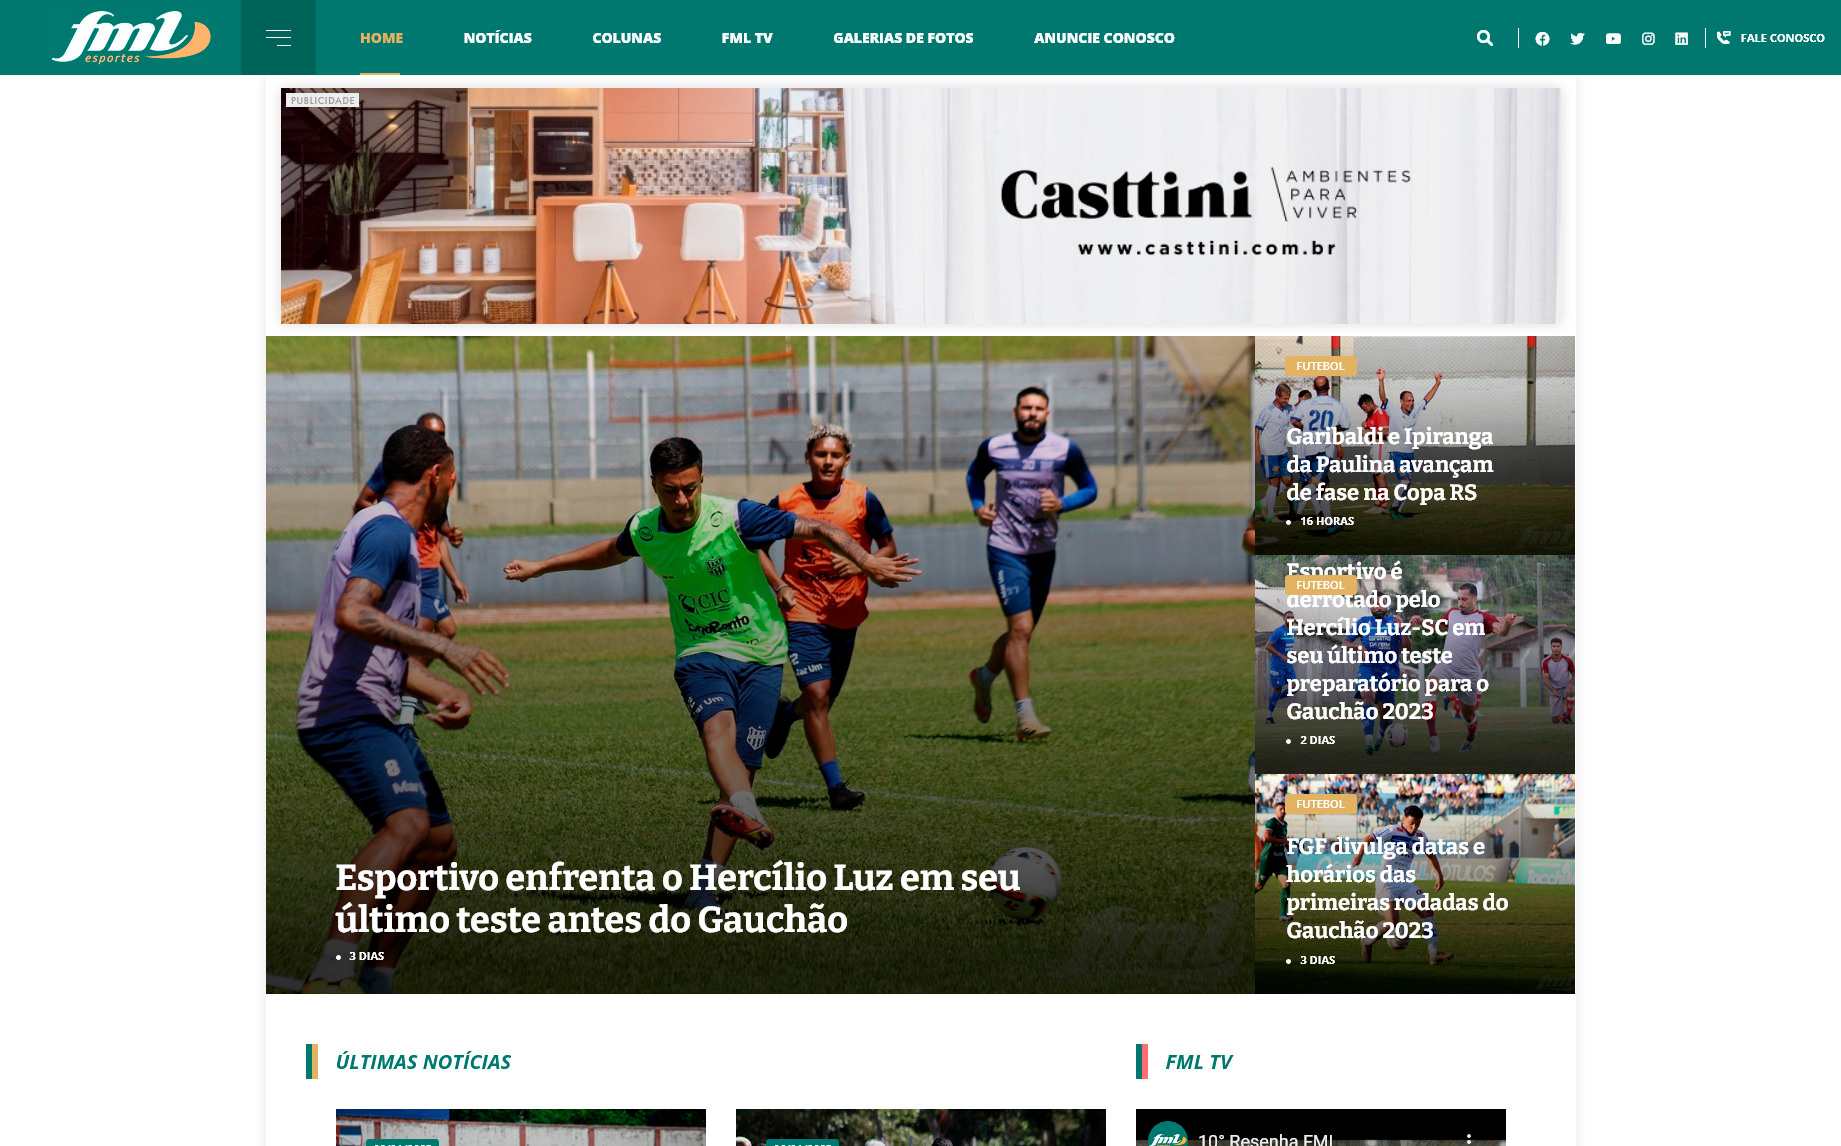 tela inicial do site fmlesportes.com.br